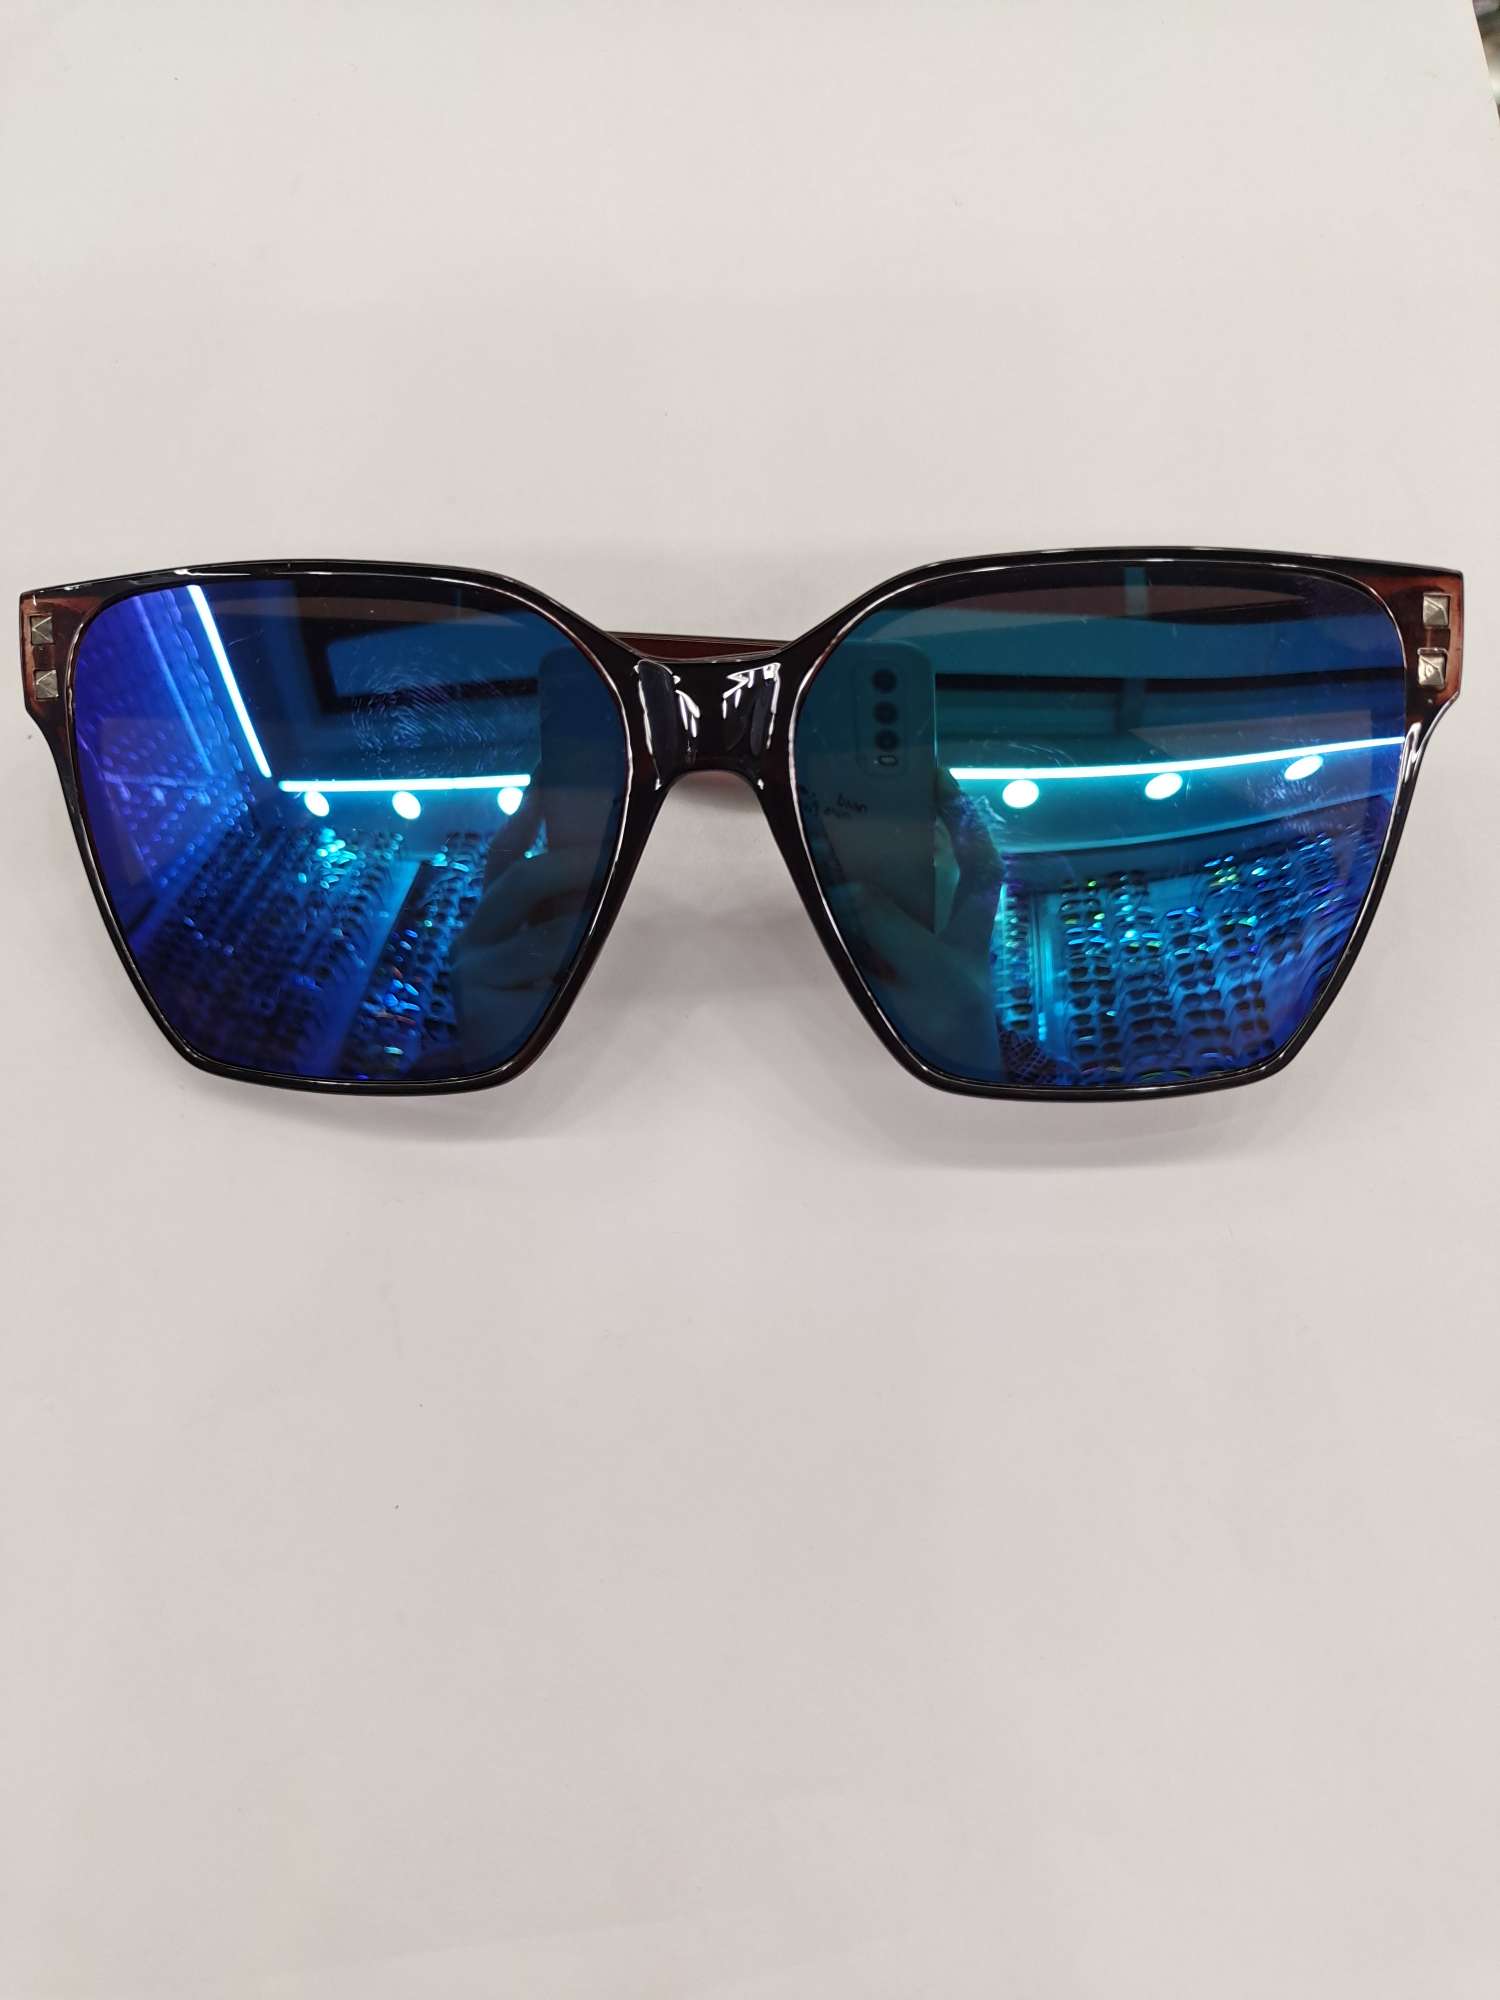 G50墨镜太阳镜男女可戴防紫外线保护眼睛时尚潮流详情图1